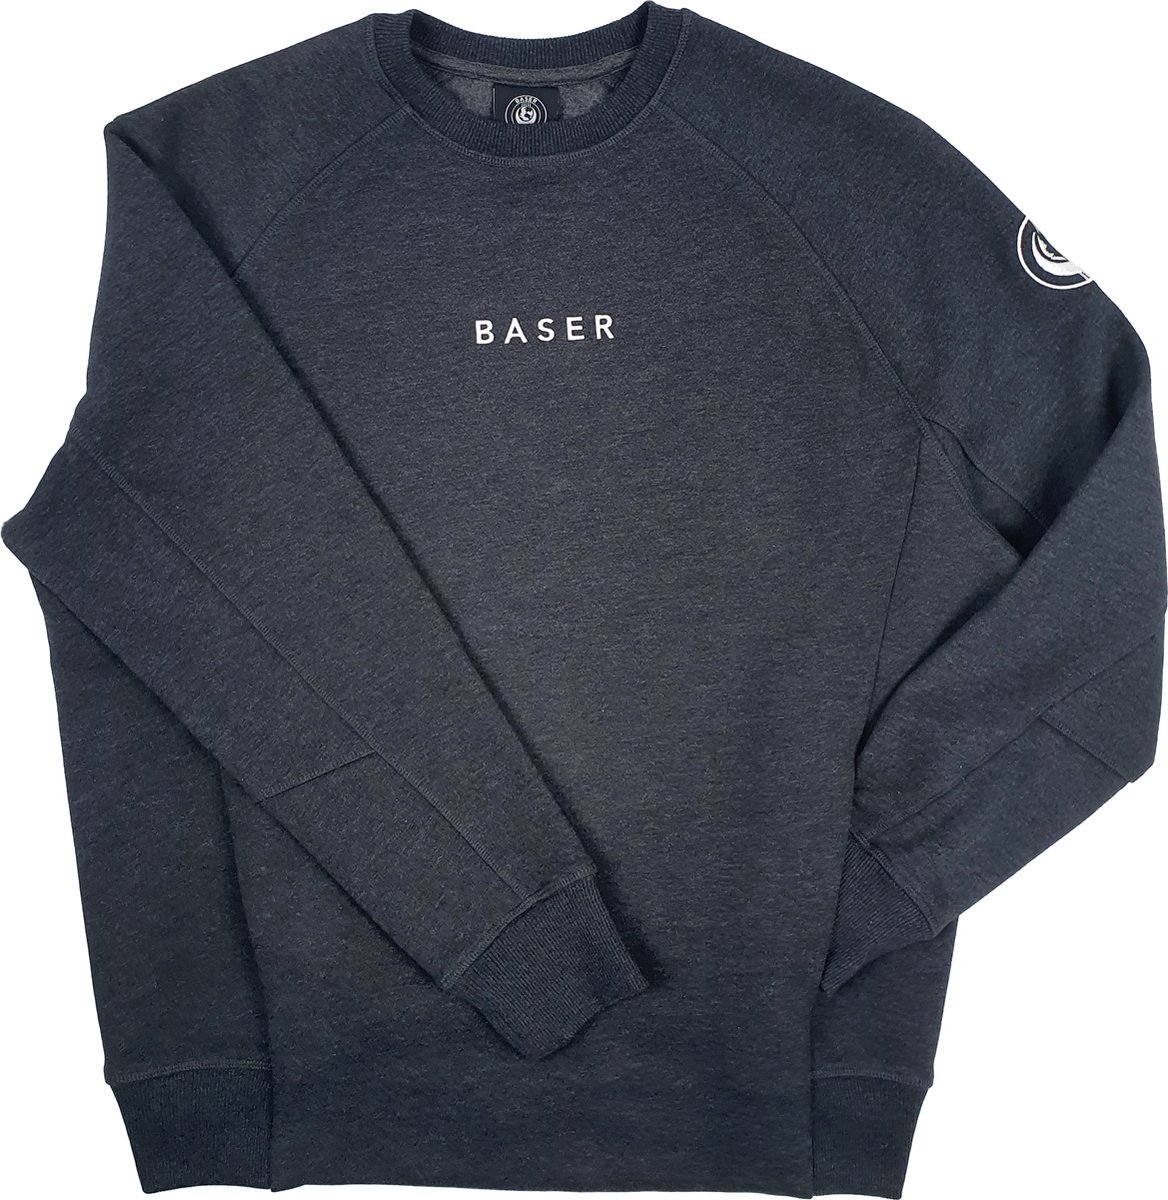 BASER Statement Sweater Grijs Melange Fleece - Maat L